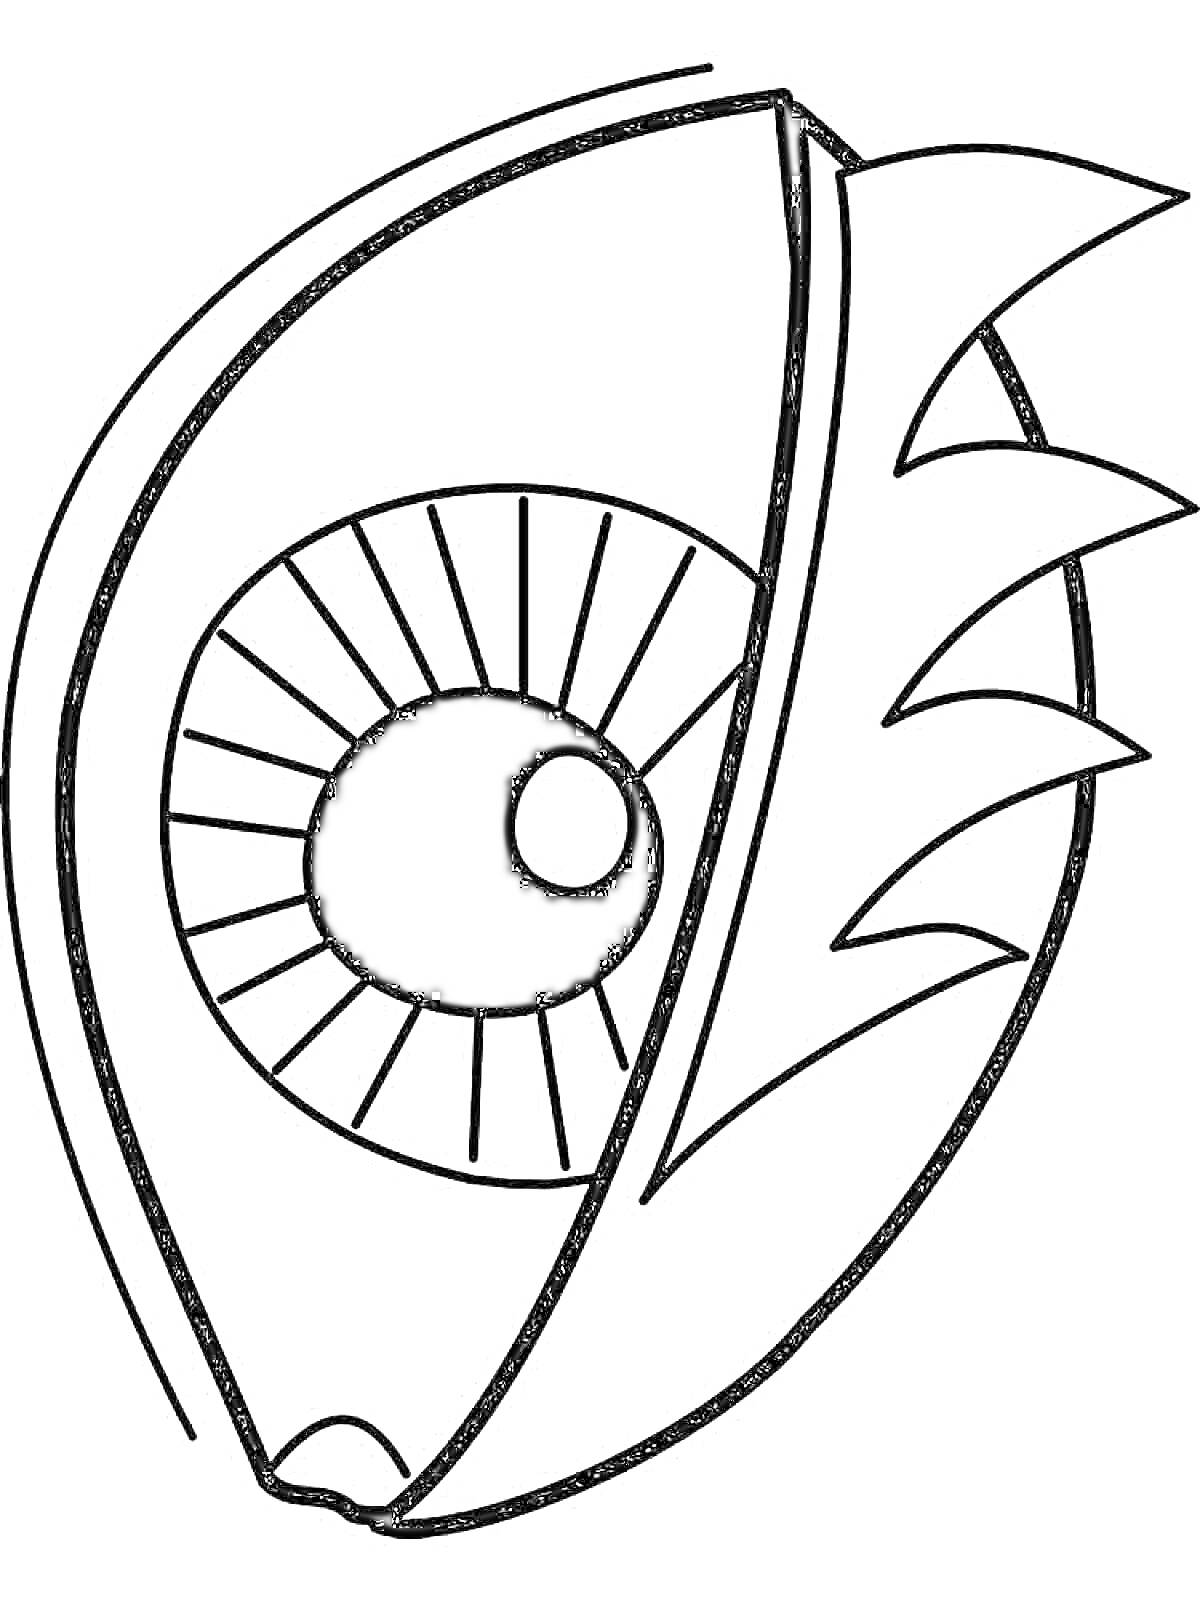 Раскраска Глаз с ресницами и декоративными элементами в виде зубцов